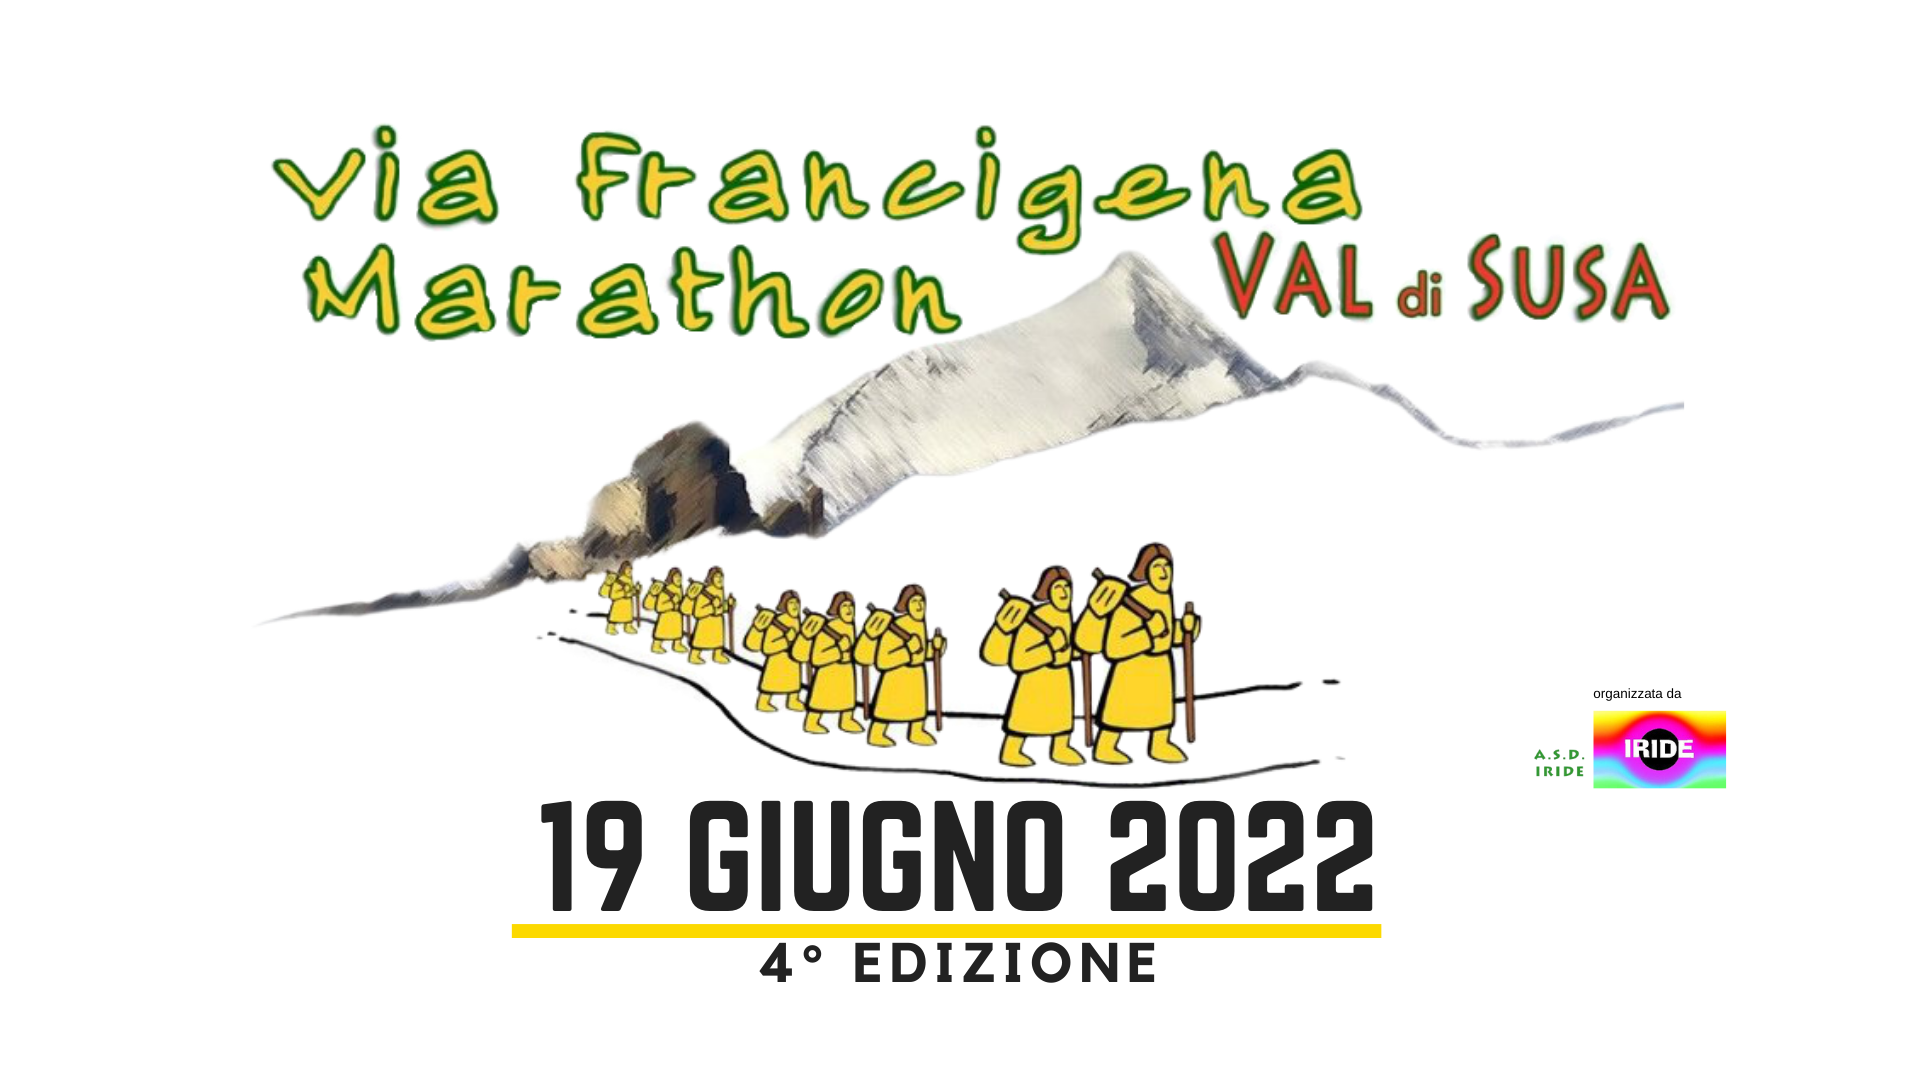 Logo Via Francigena Marathon Val di Susa - no data (Copertina di Facebook) (1920 × 1080 px) (1)